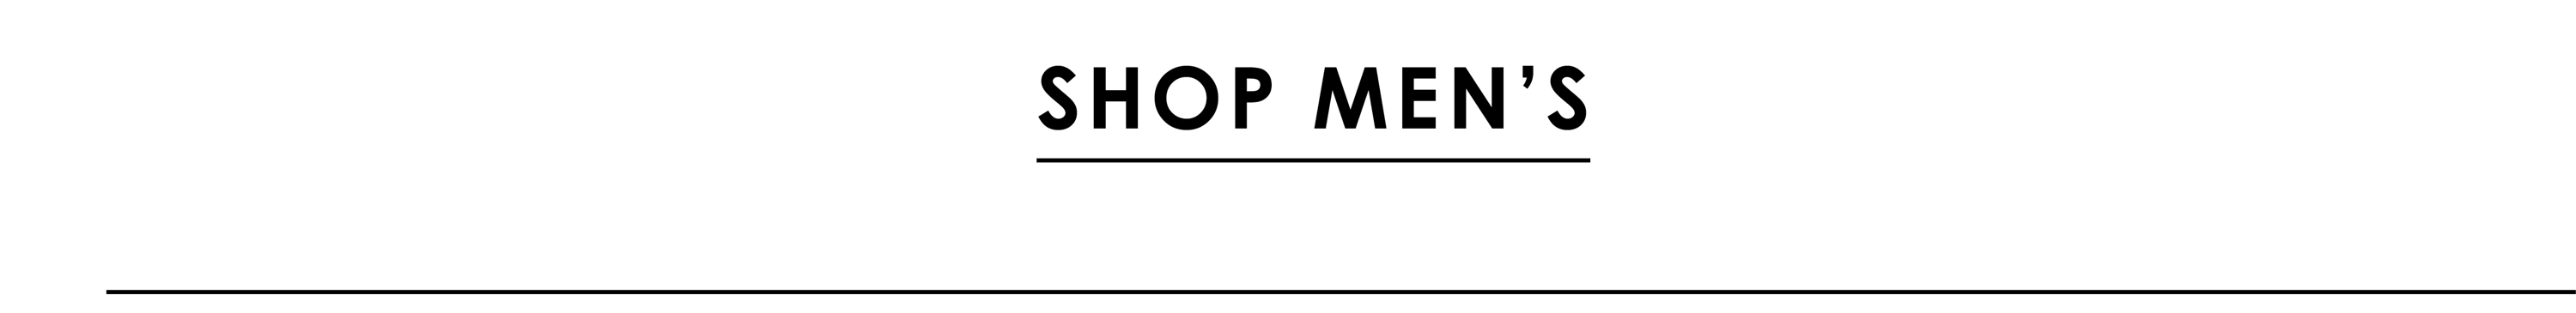 Shop Men's Warehouse Sale